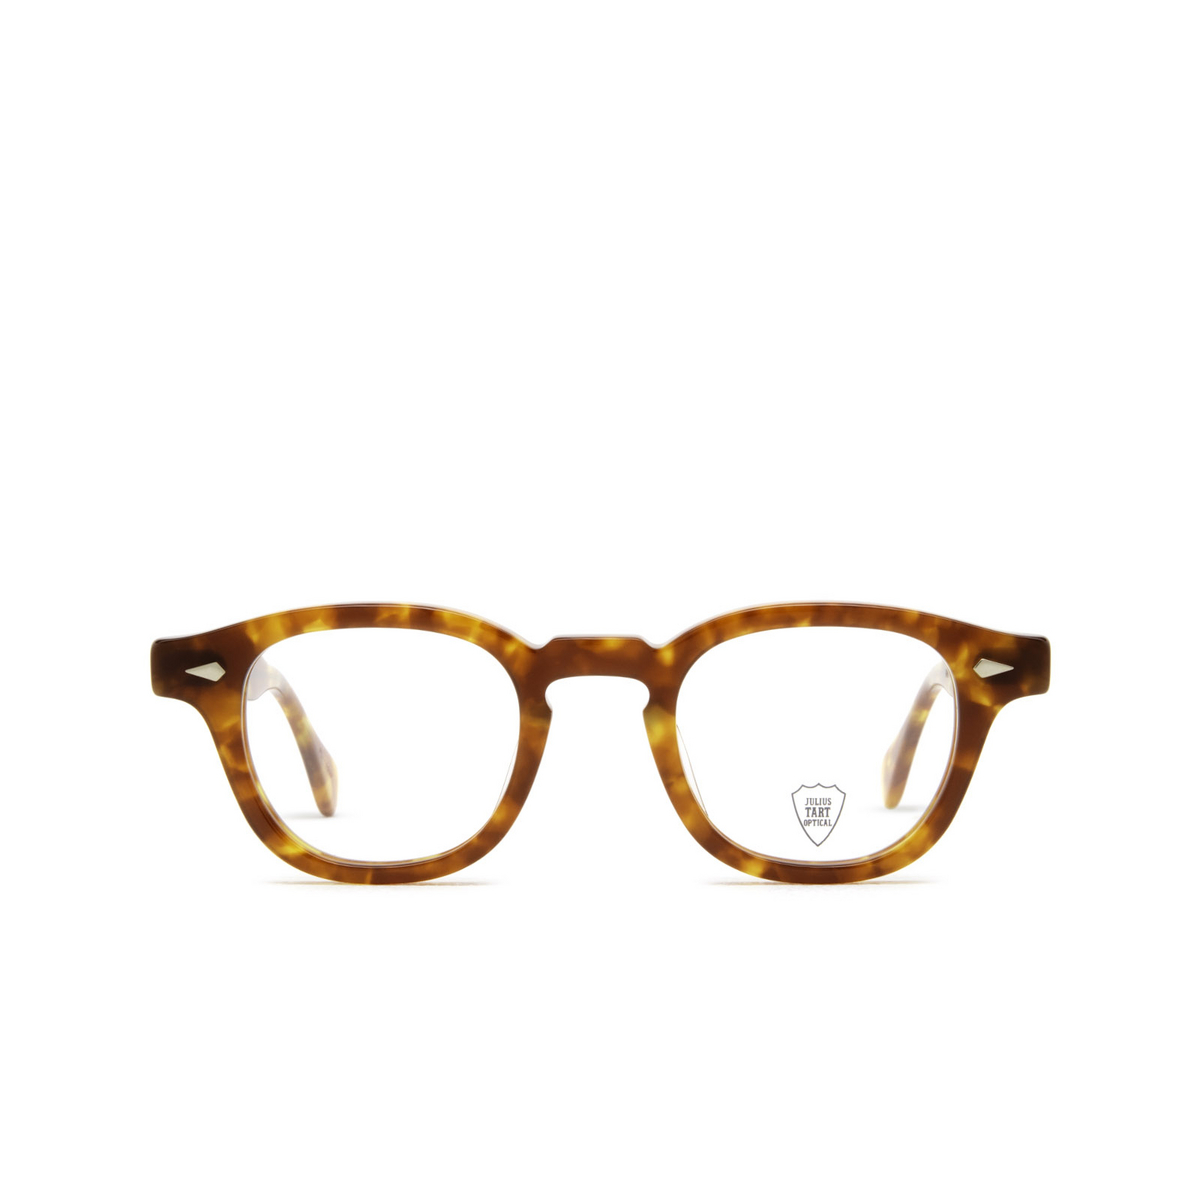 Julius Tart AR Eyeglasses LIGHT TORTOISE - front view